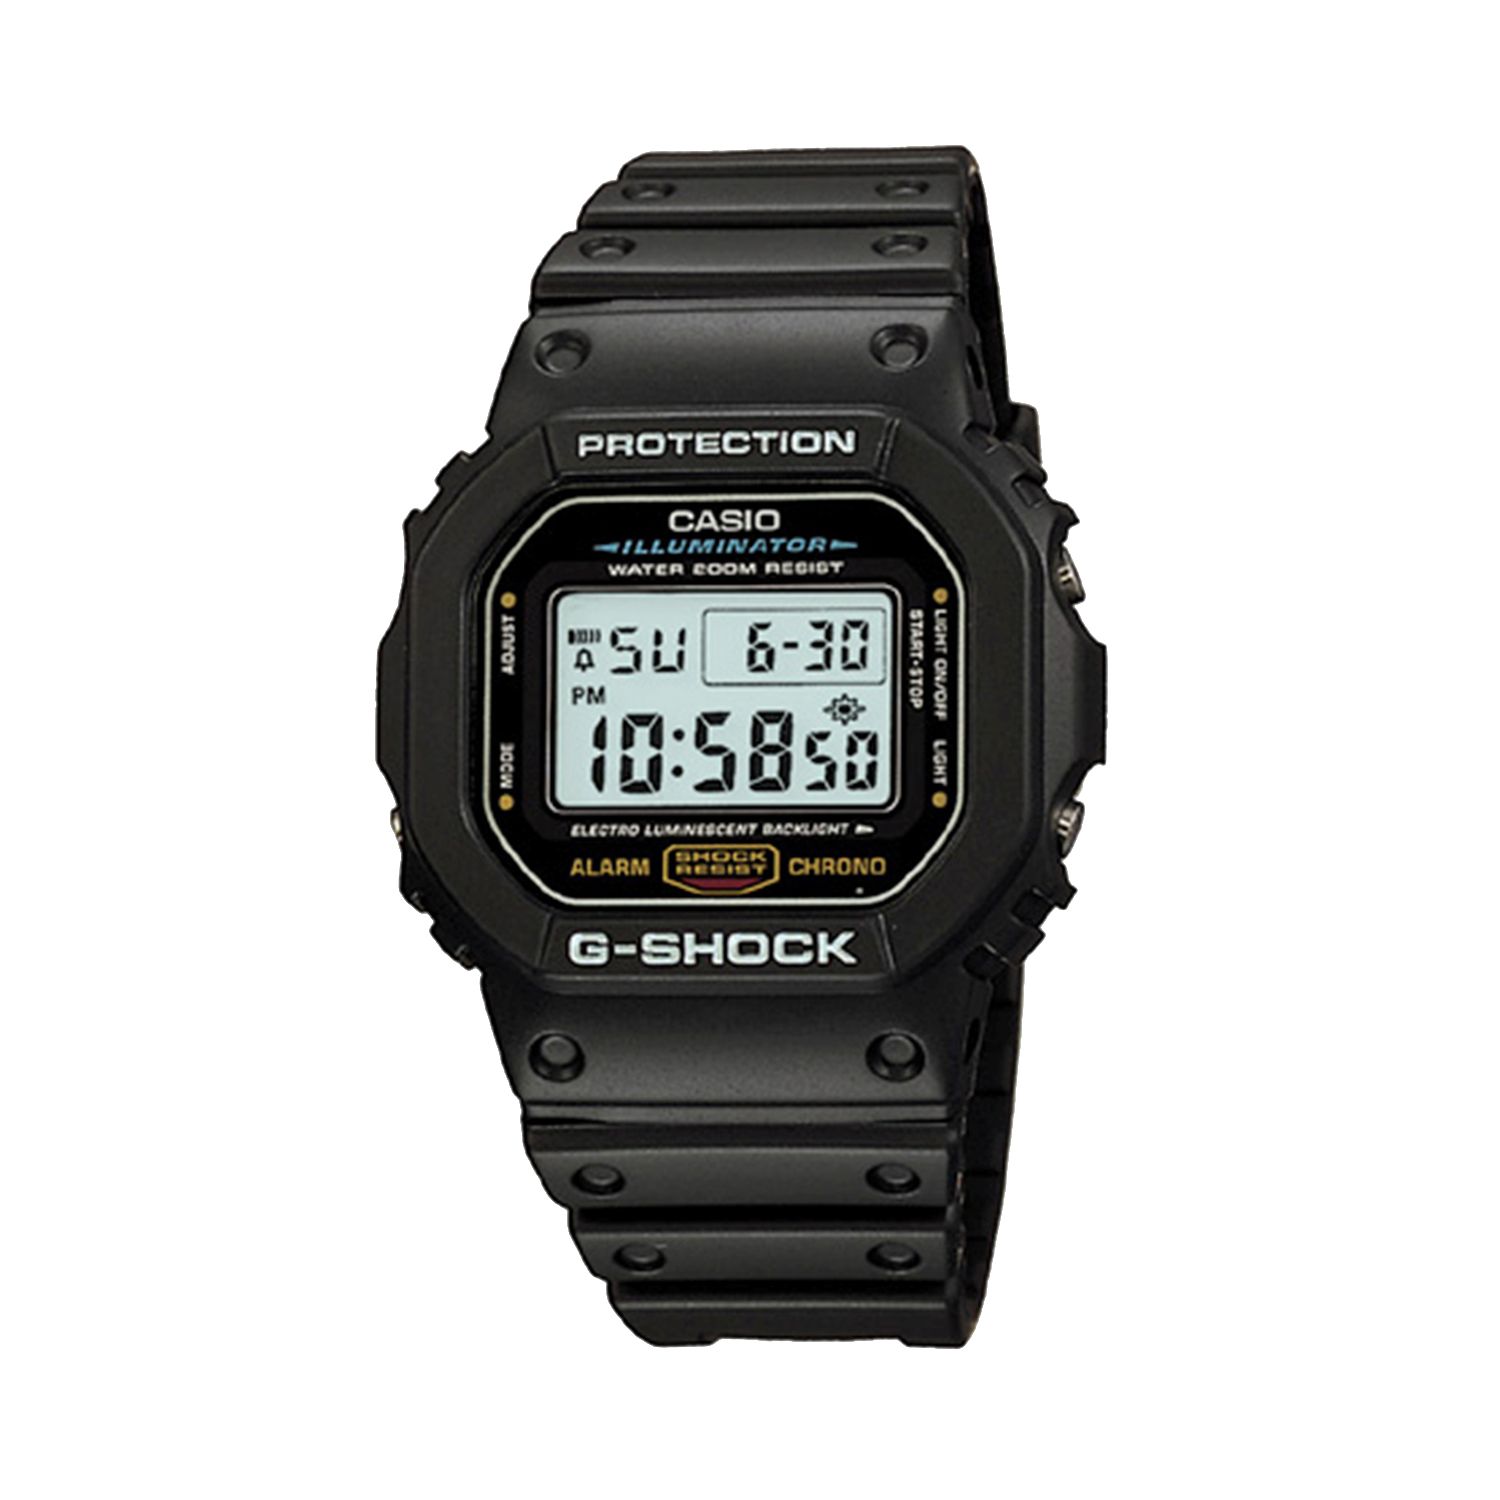 Мужские цифровые спортивные часы с хронографом G-Shock Illuminator — DW5600E-1V Casio цена и фото